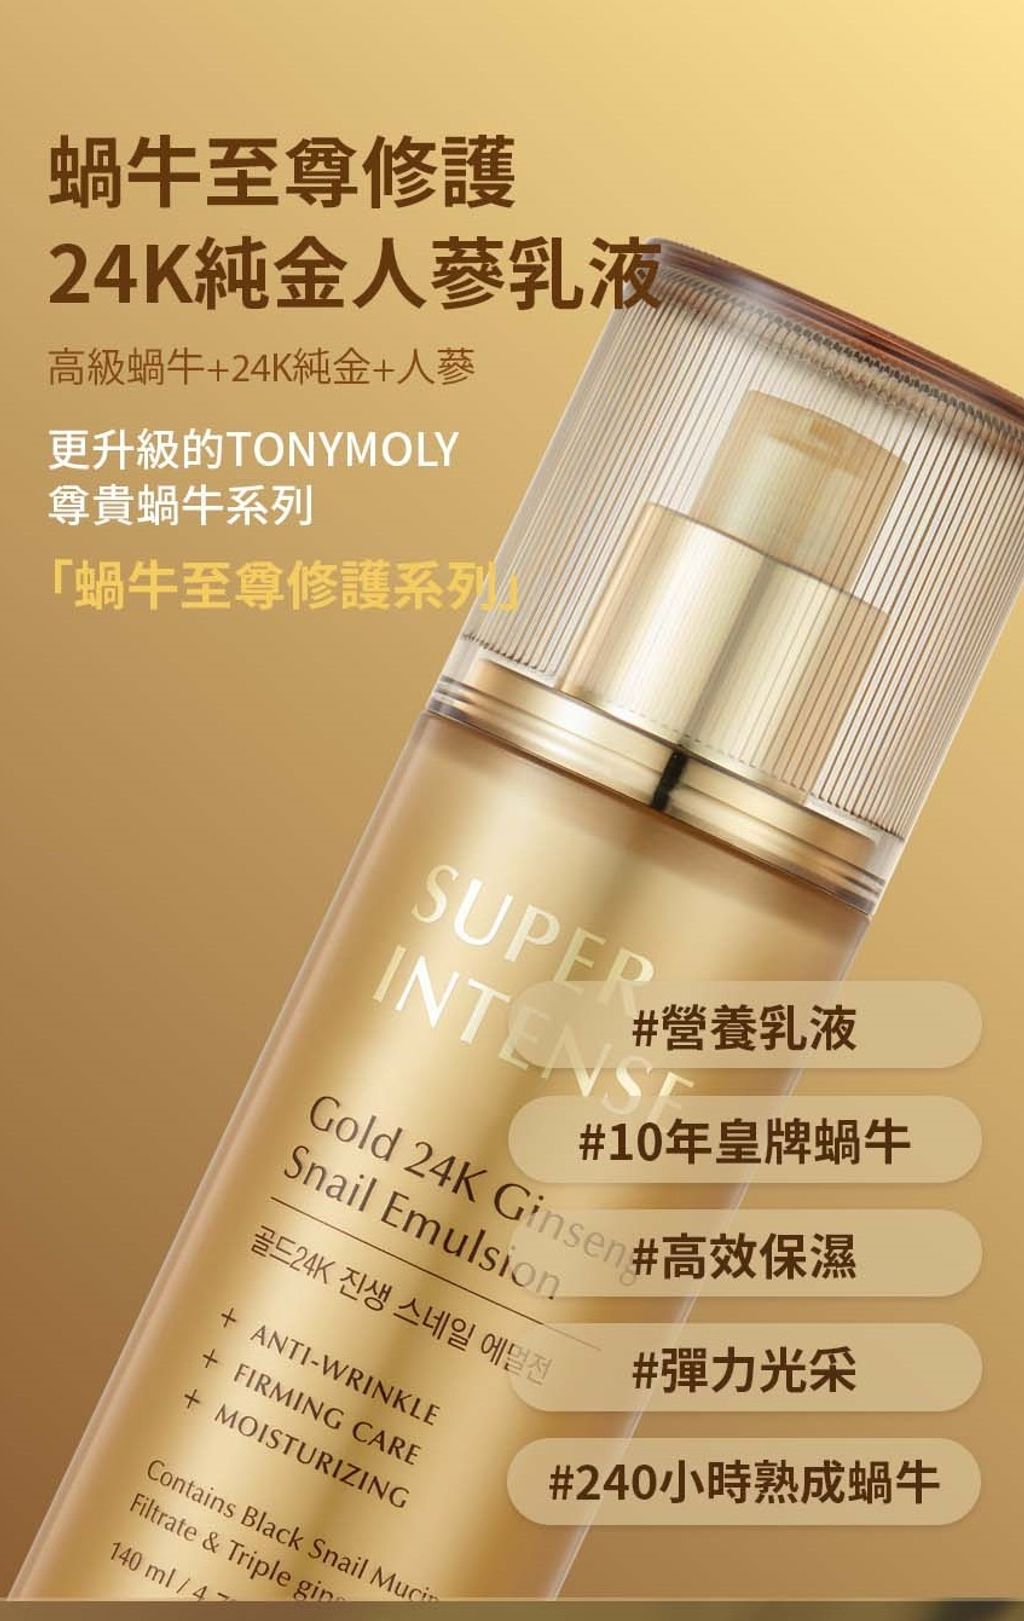 SUPER INTENSE Gold 24K Ginseng Snail Emulsion_HK_03.jpg